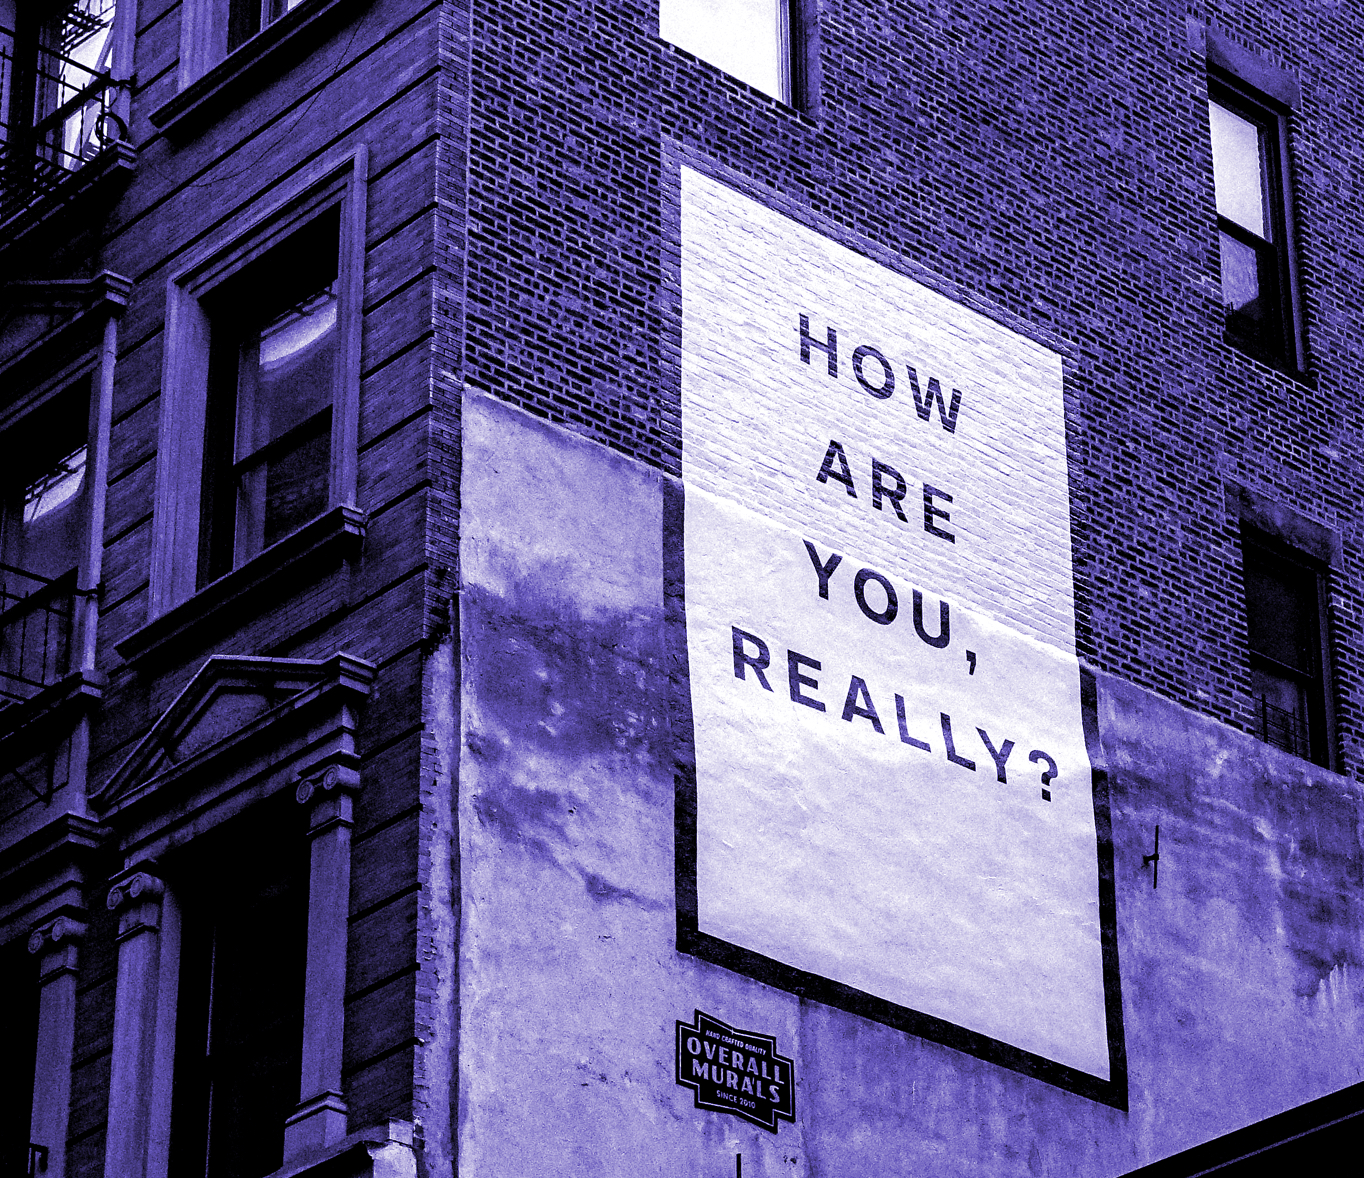 Mur d'édifice présentant une mural où il est écrit : "How are you, really?"